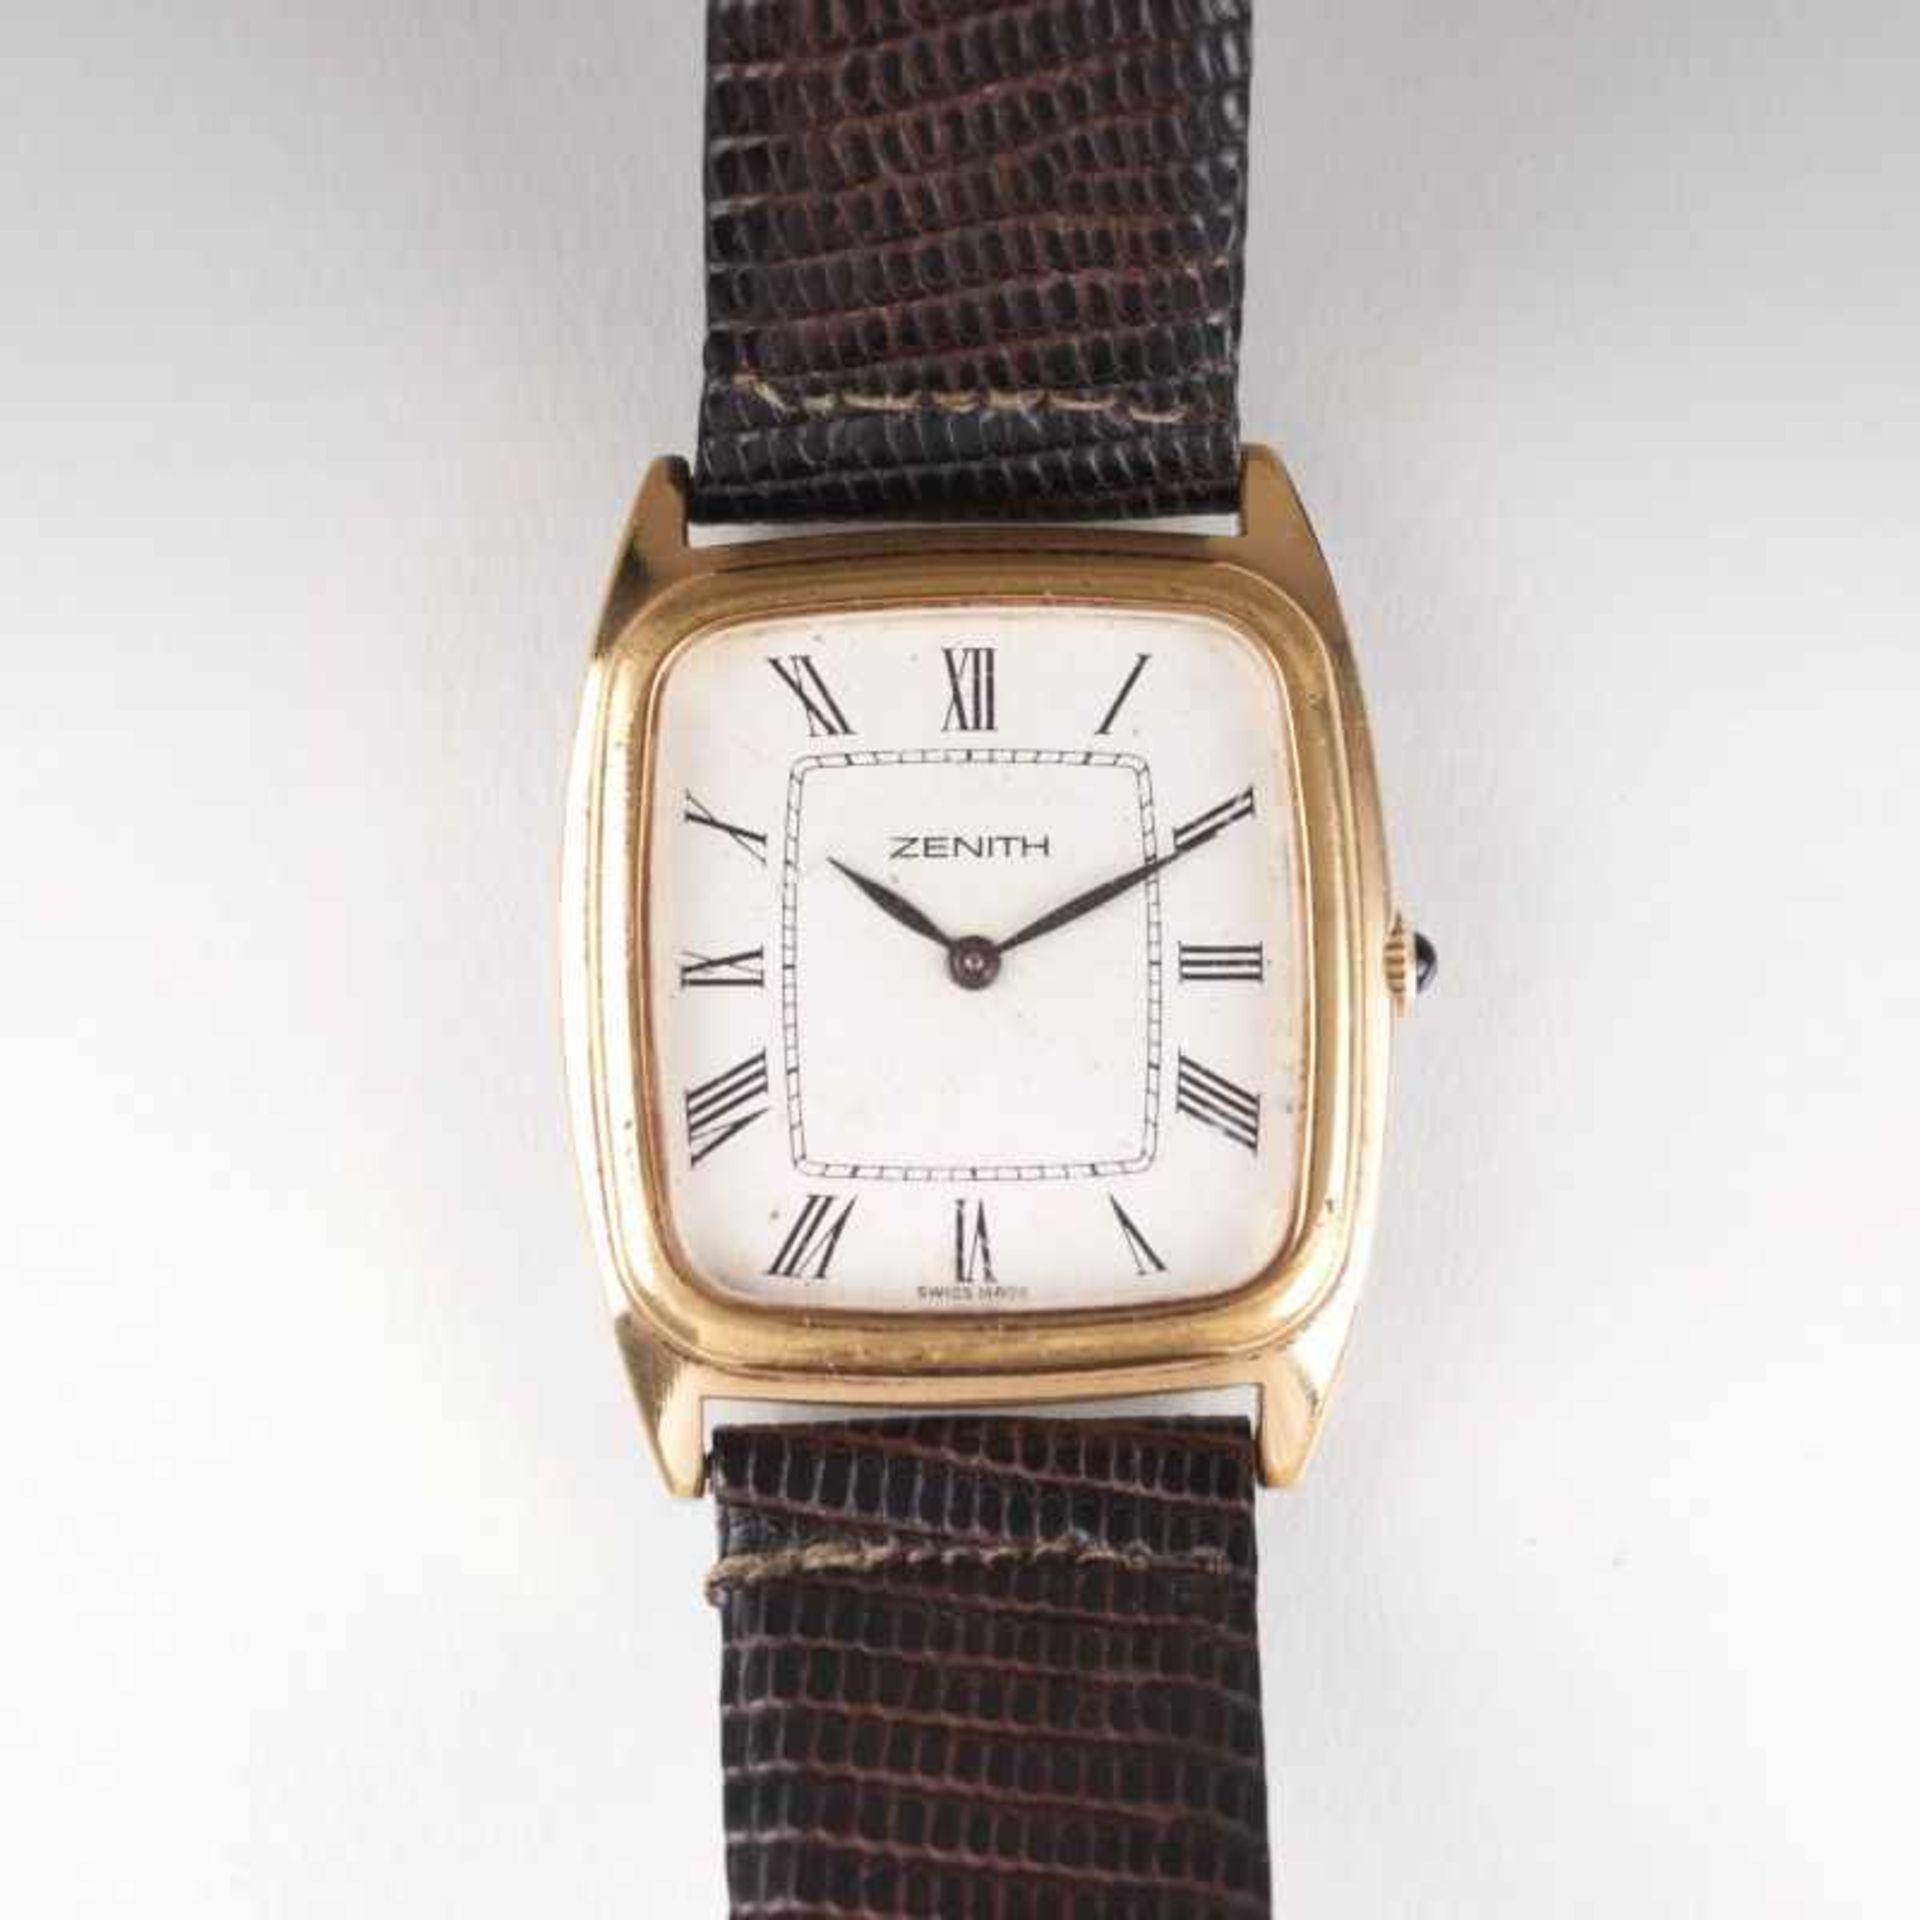 Zenith gegr. 1865 von Georges Favre-Jacot Vintage Herren-Armbanduhr Um 1980. Stahl, tlw.